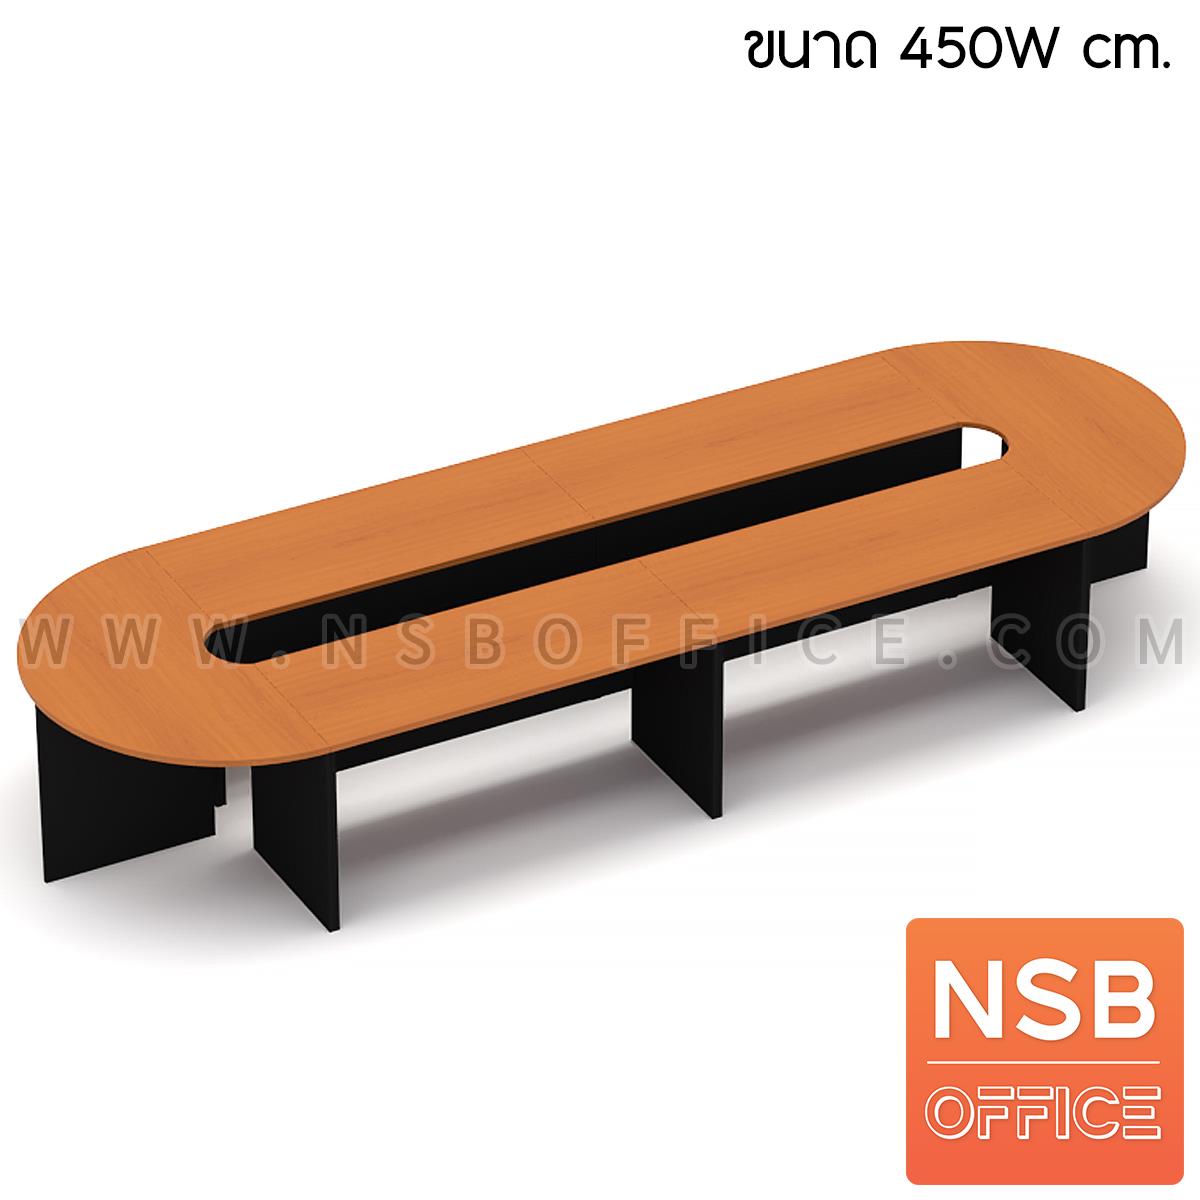 โต๊ะประชุมหัวโค้ง รุ่น Arbat (อาราบัต) ขนาด 300W, 450W, 600W, 750W, 900W cm. ขาไม้